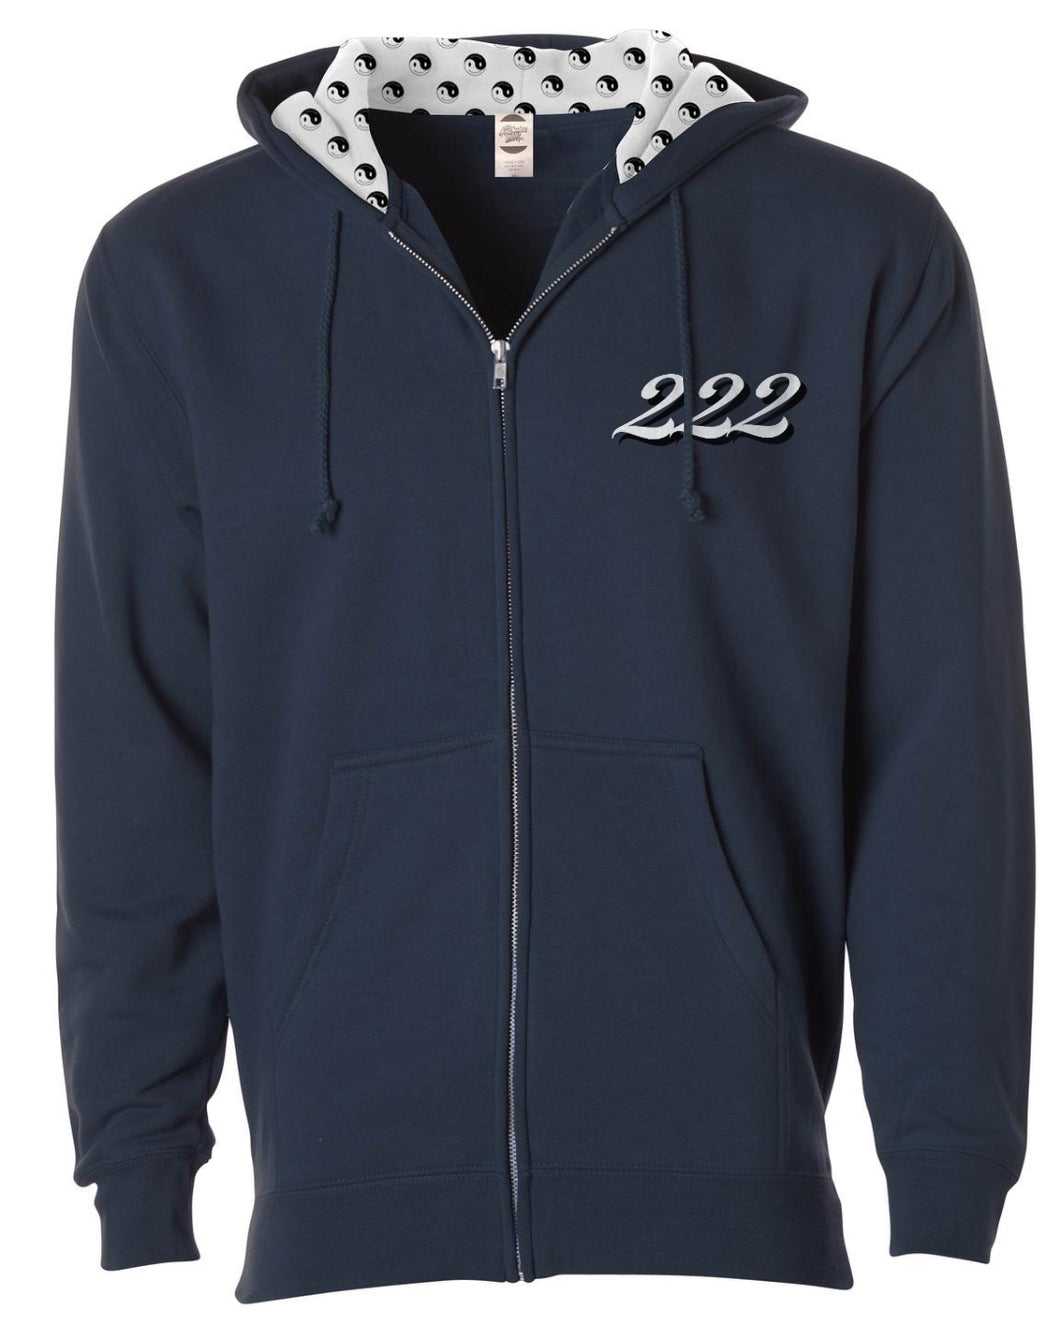 navy 222 hoodie with zipper